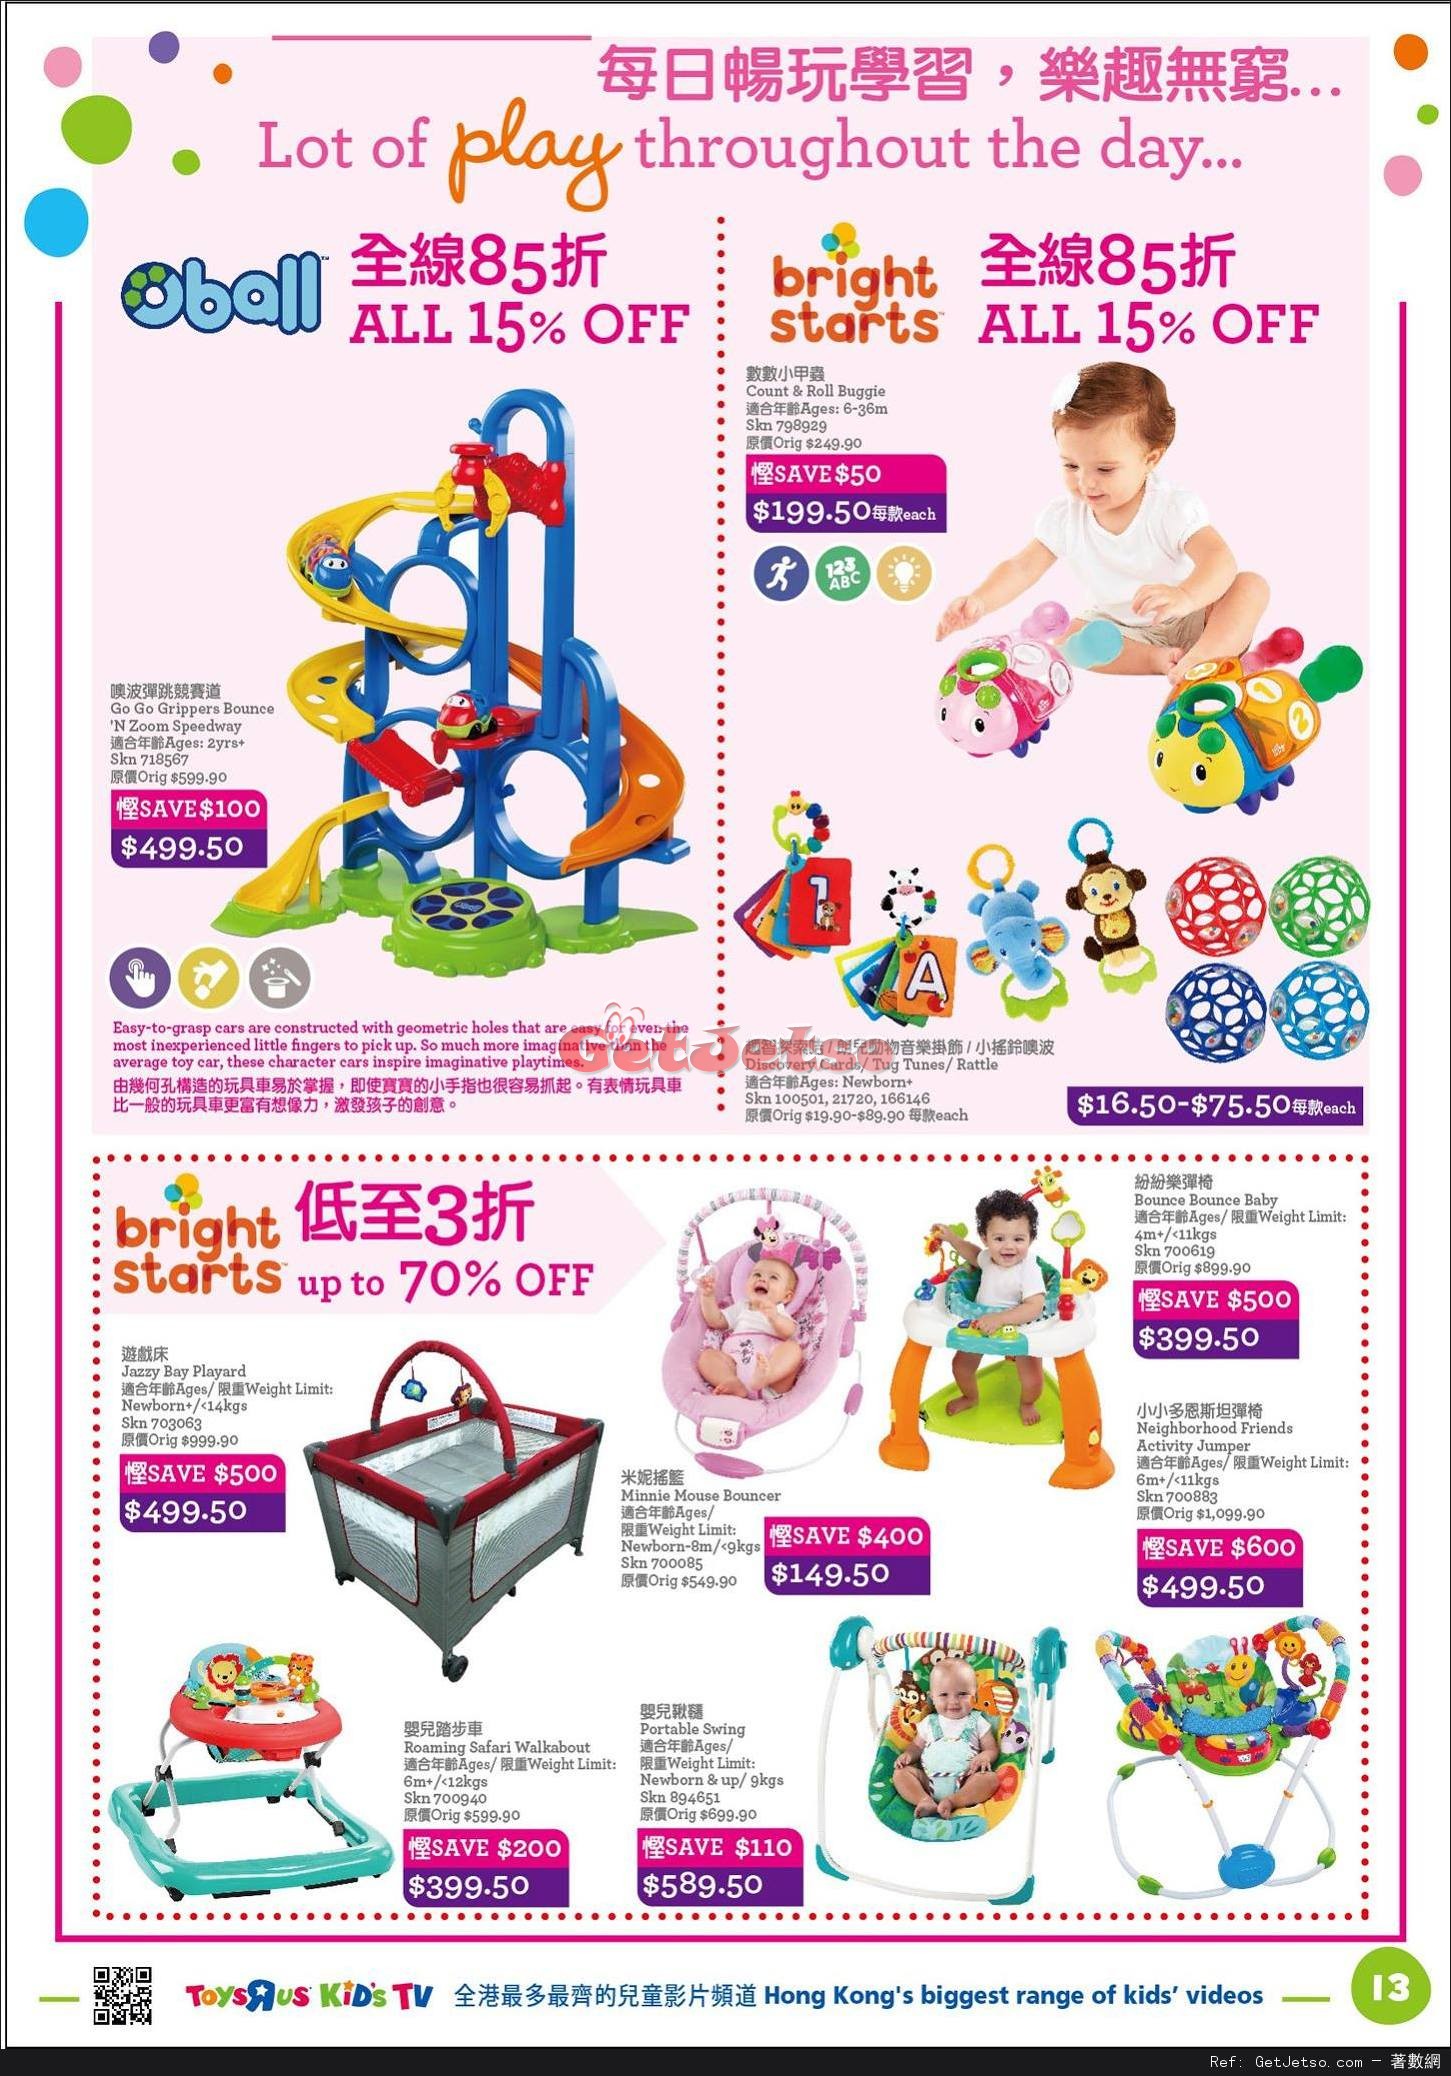 玩具反斗城Toys"R"Us 嬰兒用品低至2折開倉優惠(至17年4月18日)圖片13